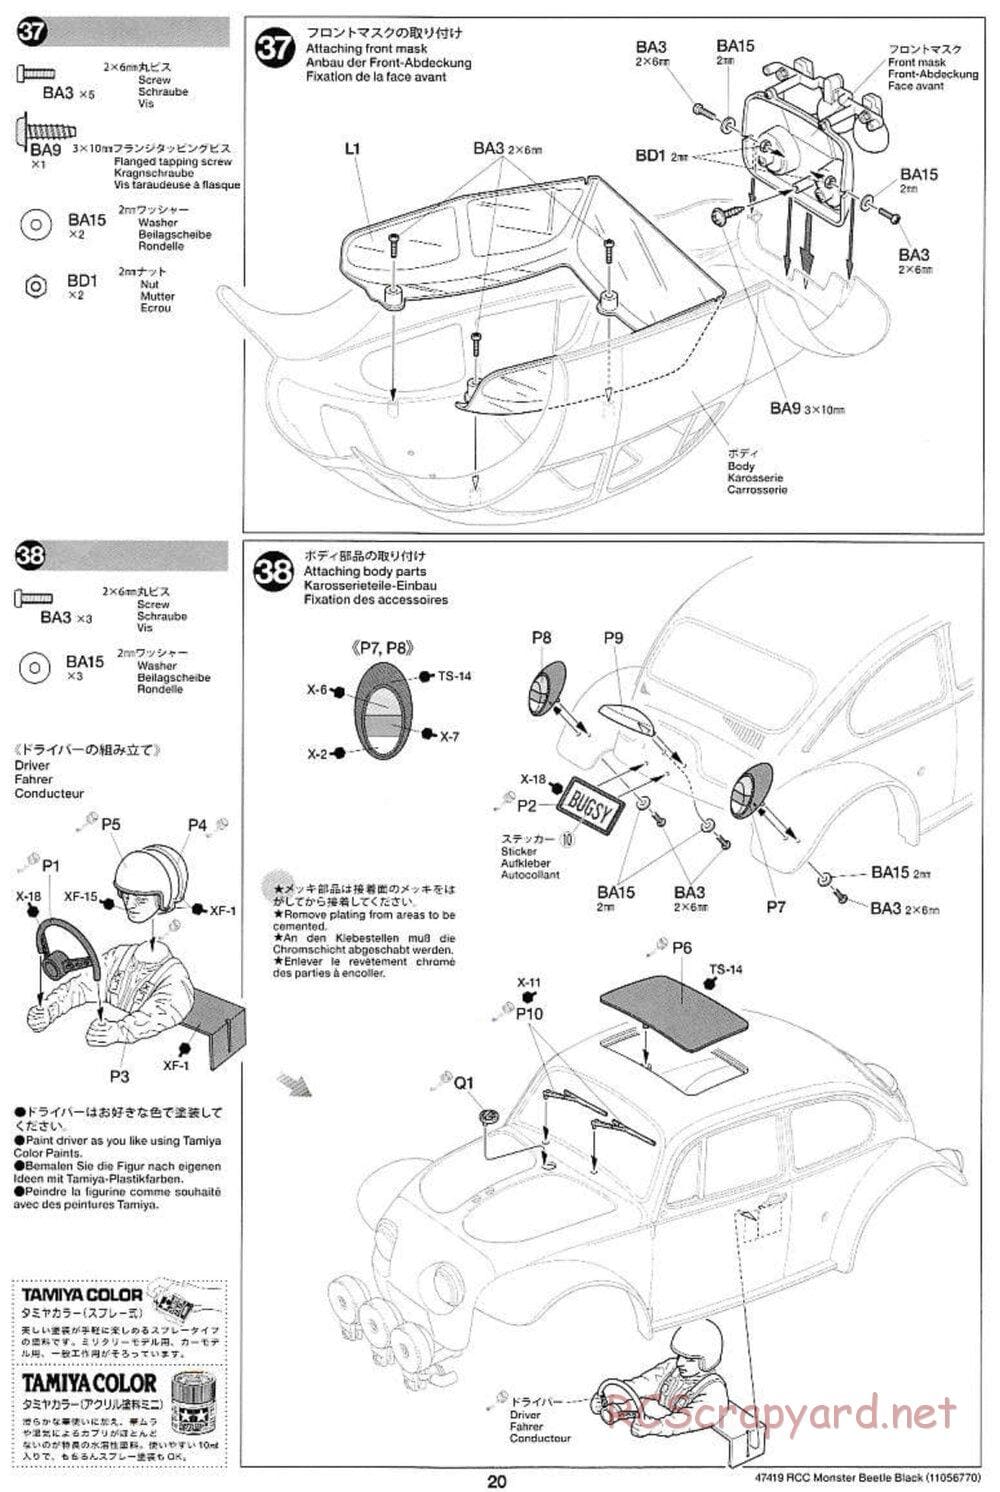 Tamiya - Monster Beetle Black Edition - ORV Chassis - Manual - Page 20